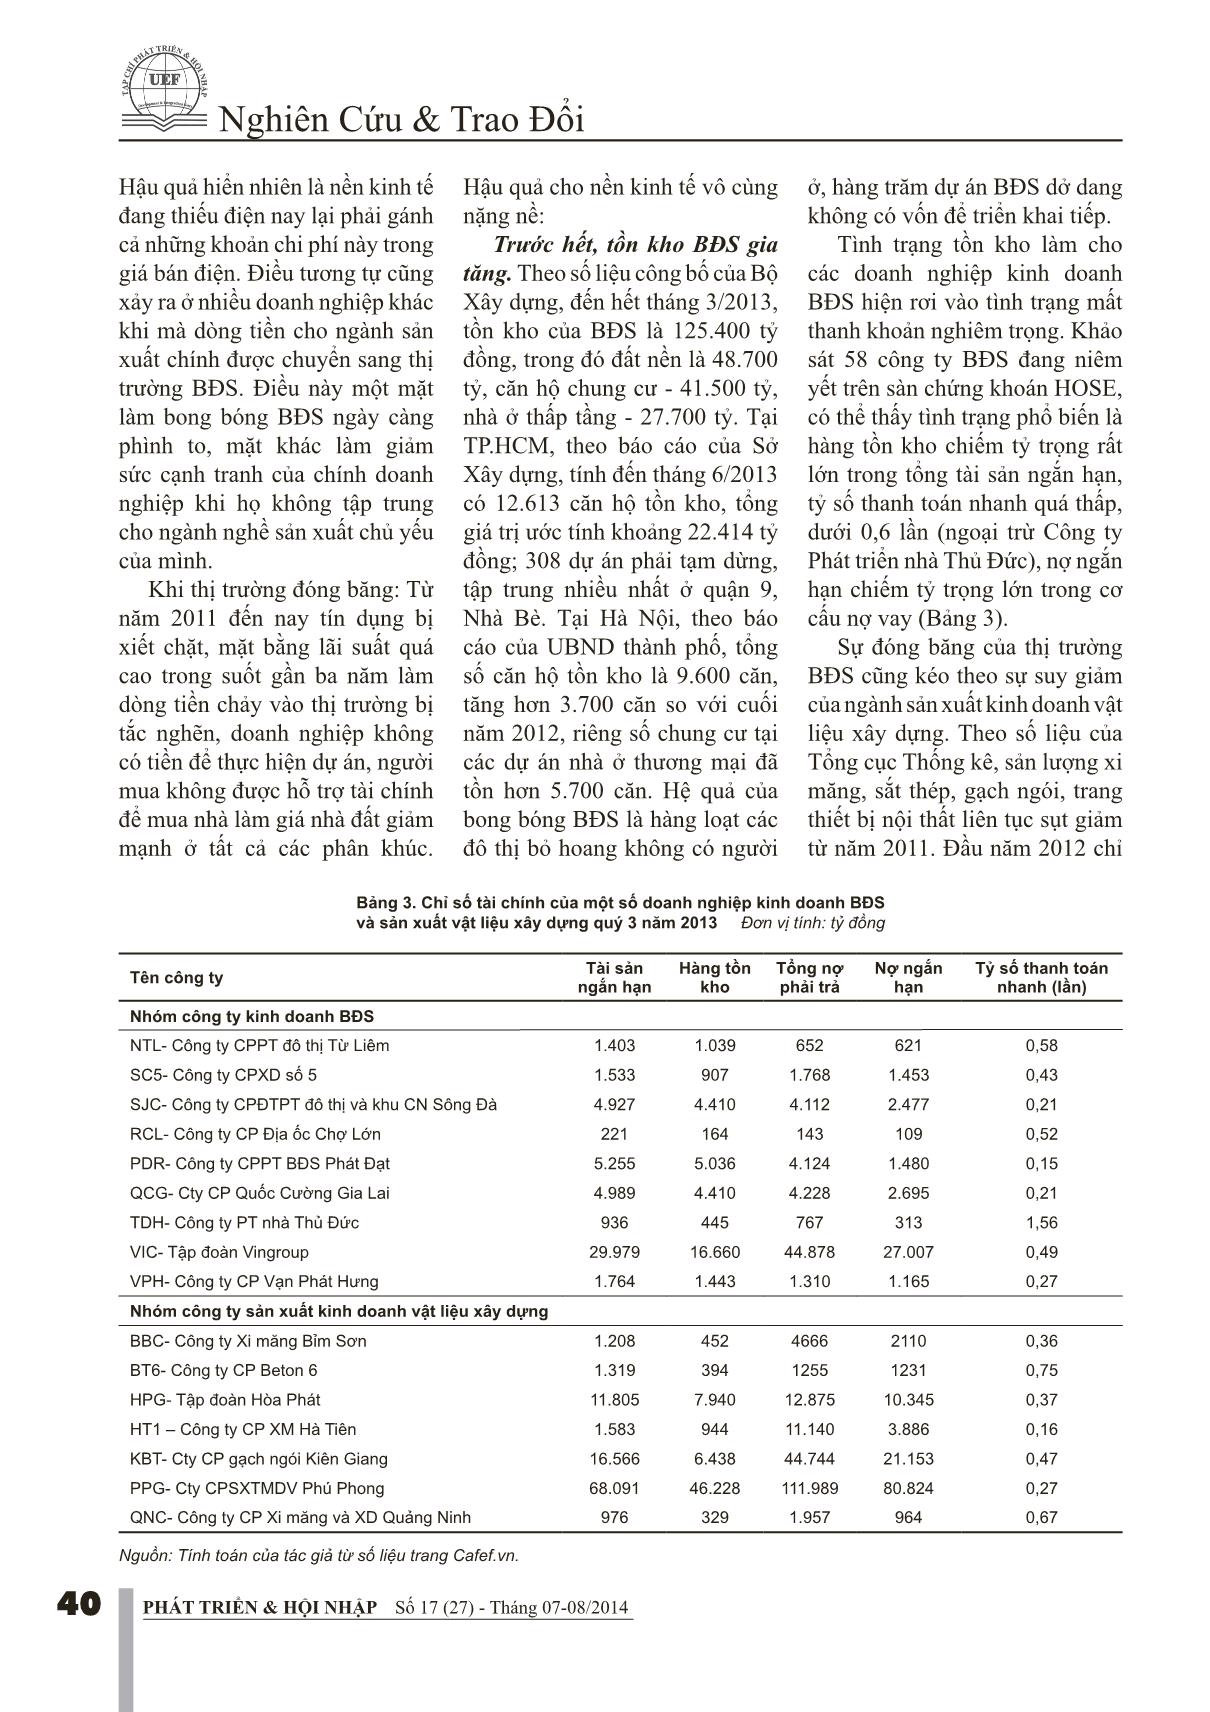 Sự hình thành và phát triển thị trường bất động sản tại Việt Nam trong tiến trình đổi mới kinh tế trang 5